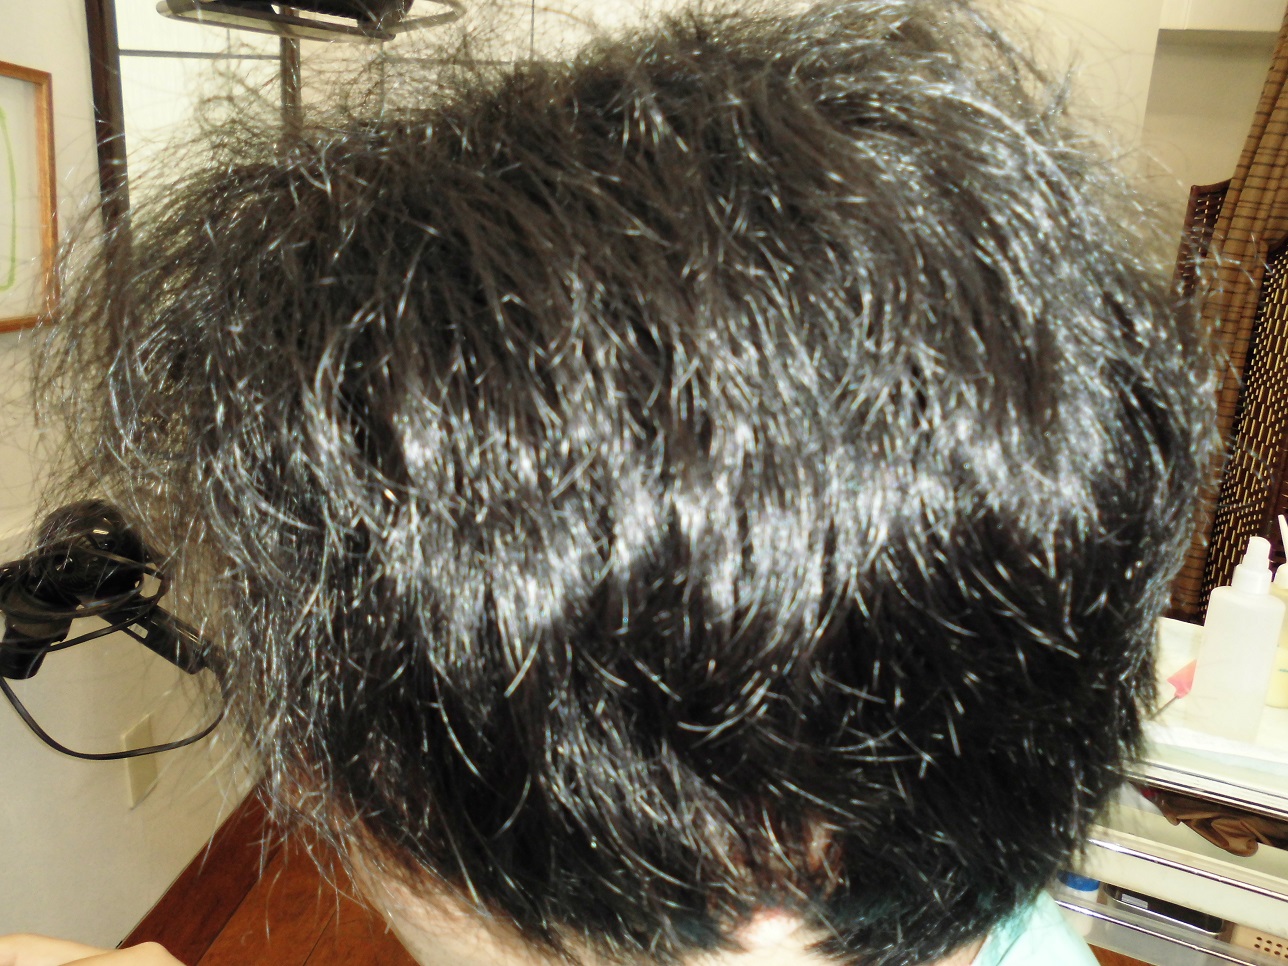 助けて下さい 髪が細く全体的パサパサで 広がるクセ毛です 東京 池袋にお住まいのｓ様 縮毛矯正歴８年 男性 Studio T Wave スタジオティーウェーブ